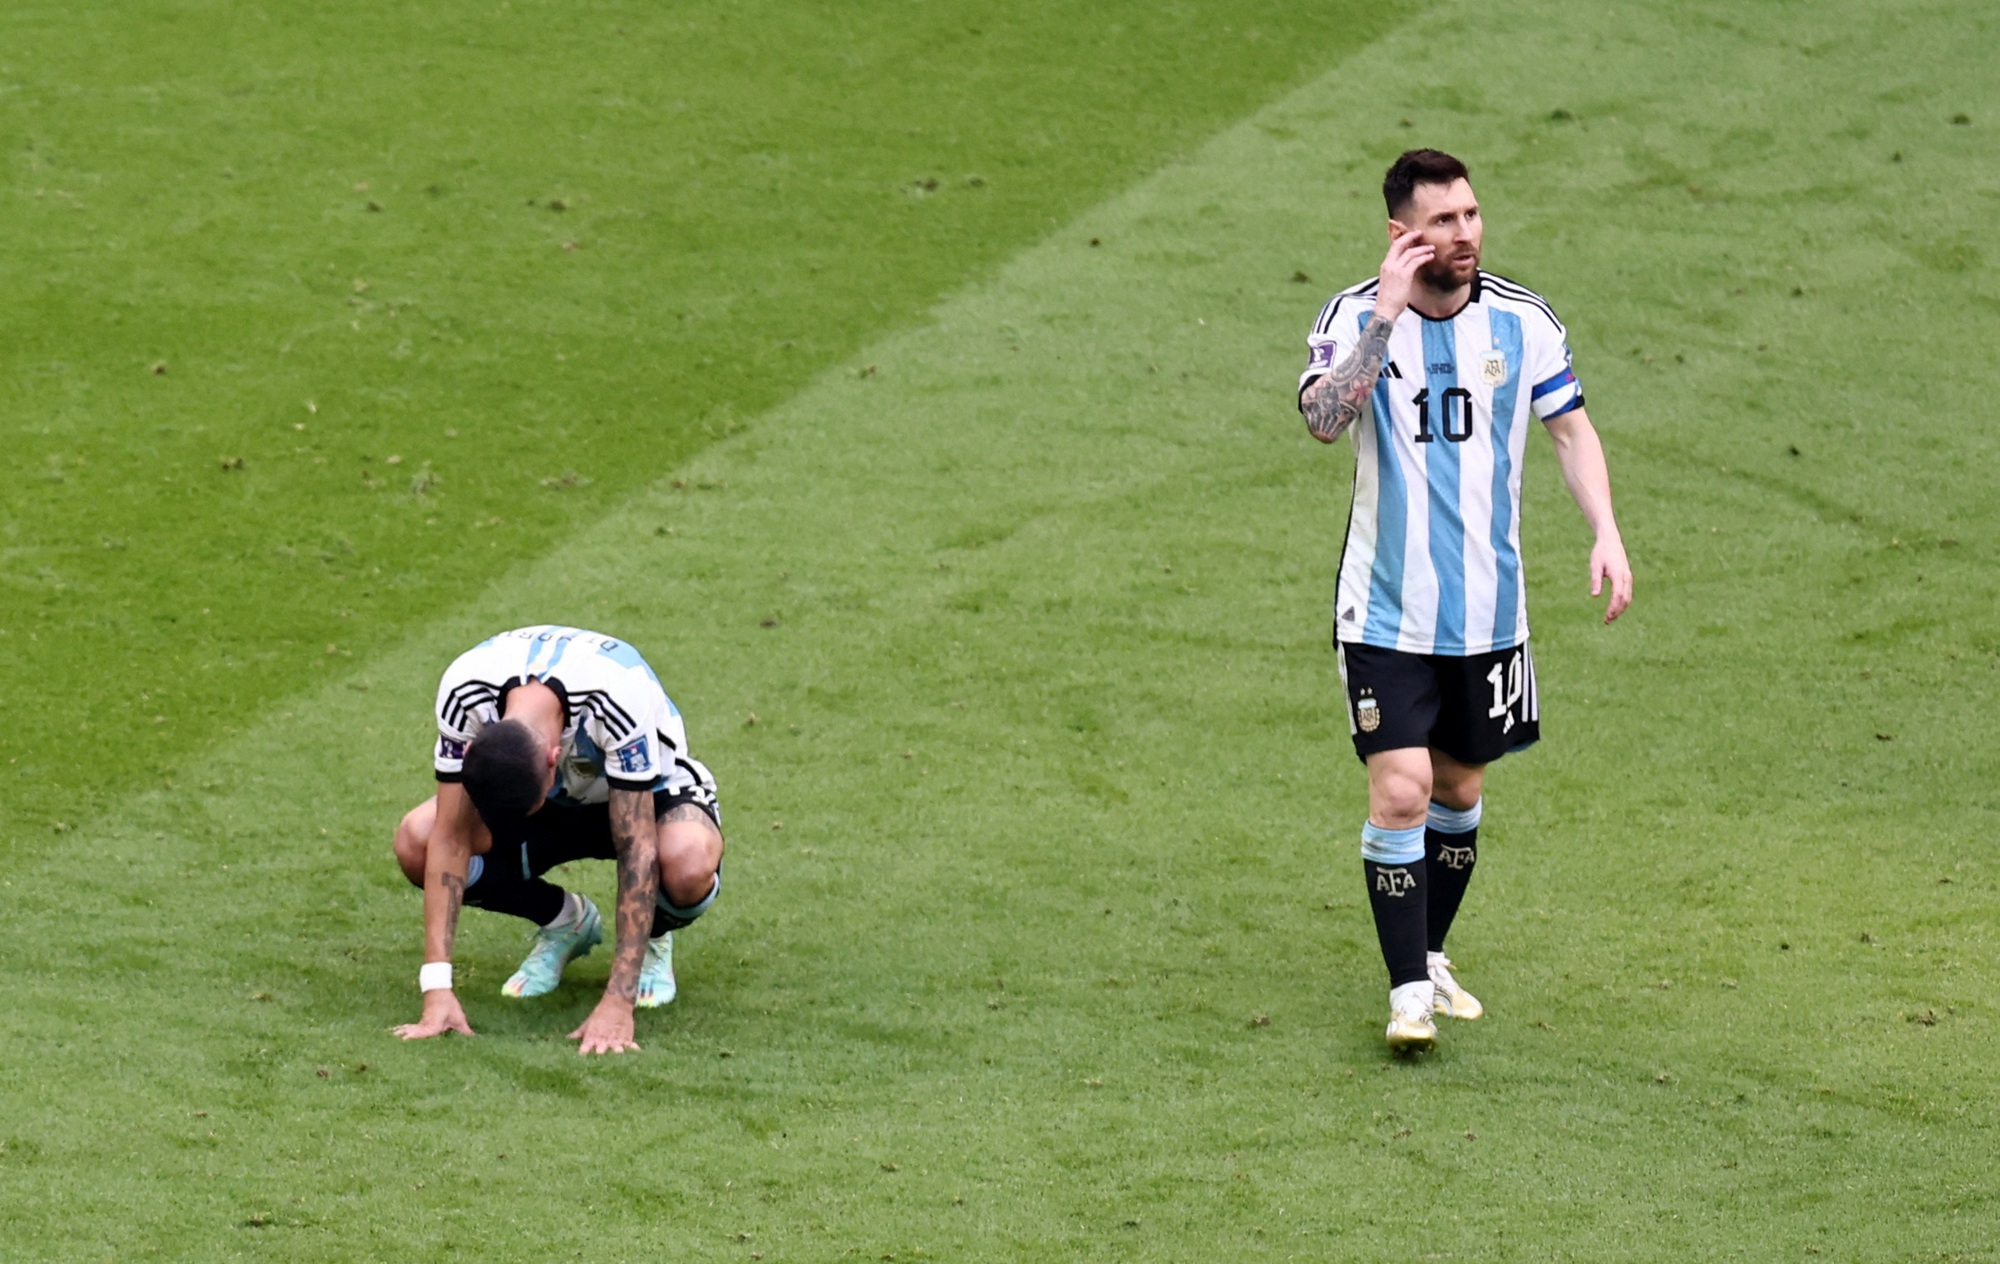 HLV đội bóng quật ngã Messi và Argentina từng làm việc ở V-League - Ảnh 1.